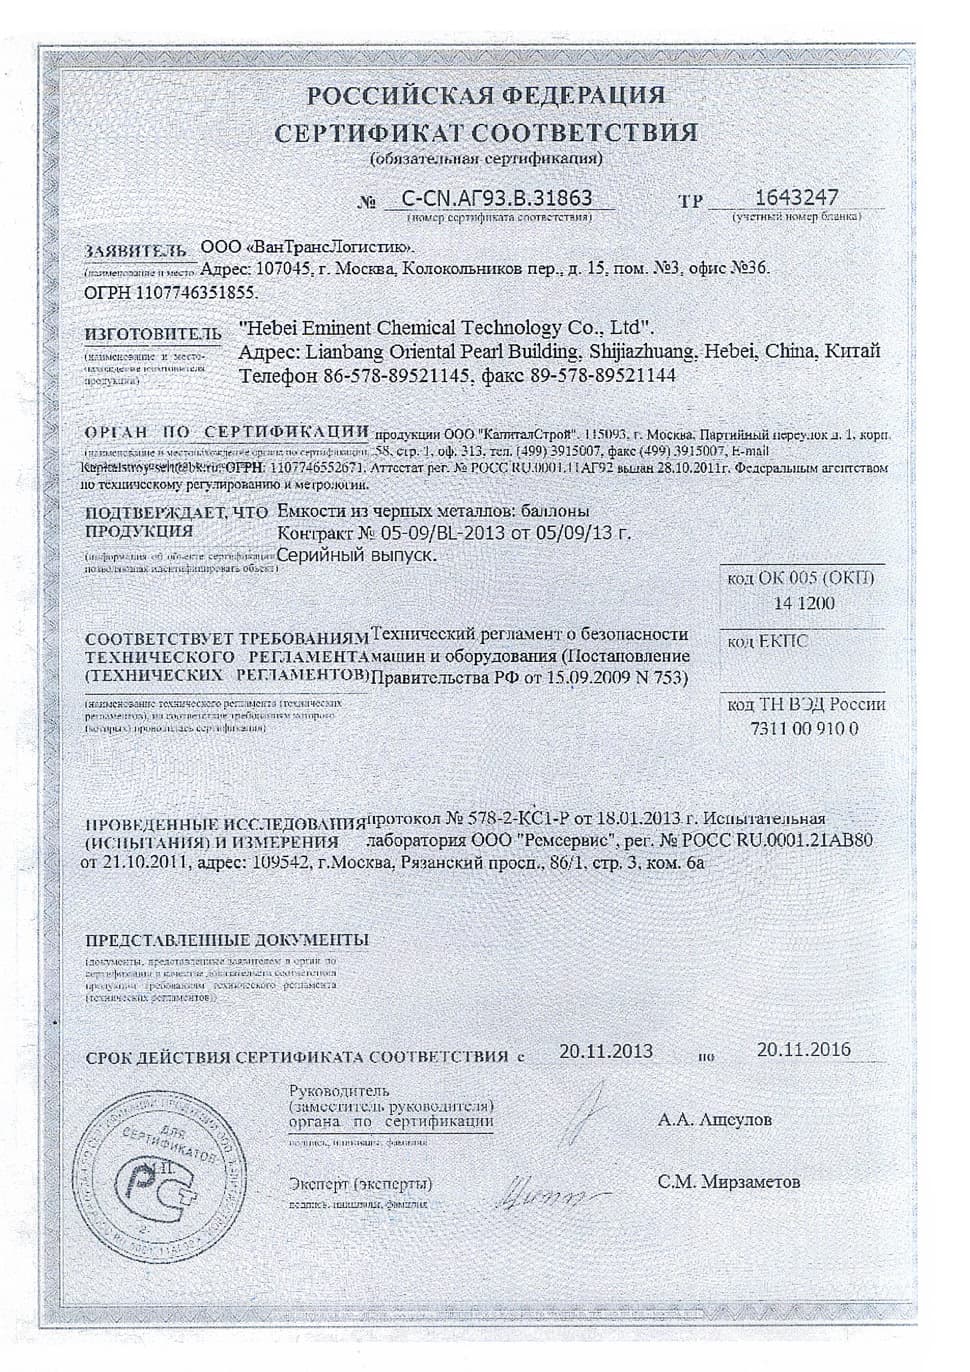 Сертификат соответствия на газовые горелки Weishaupt